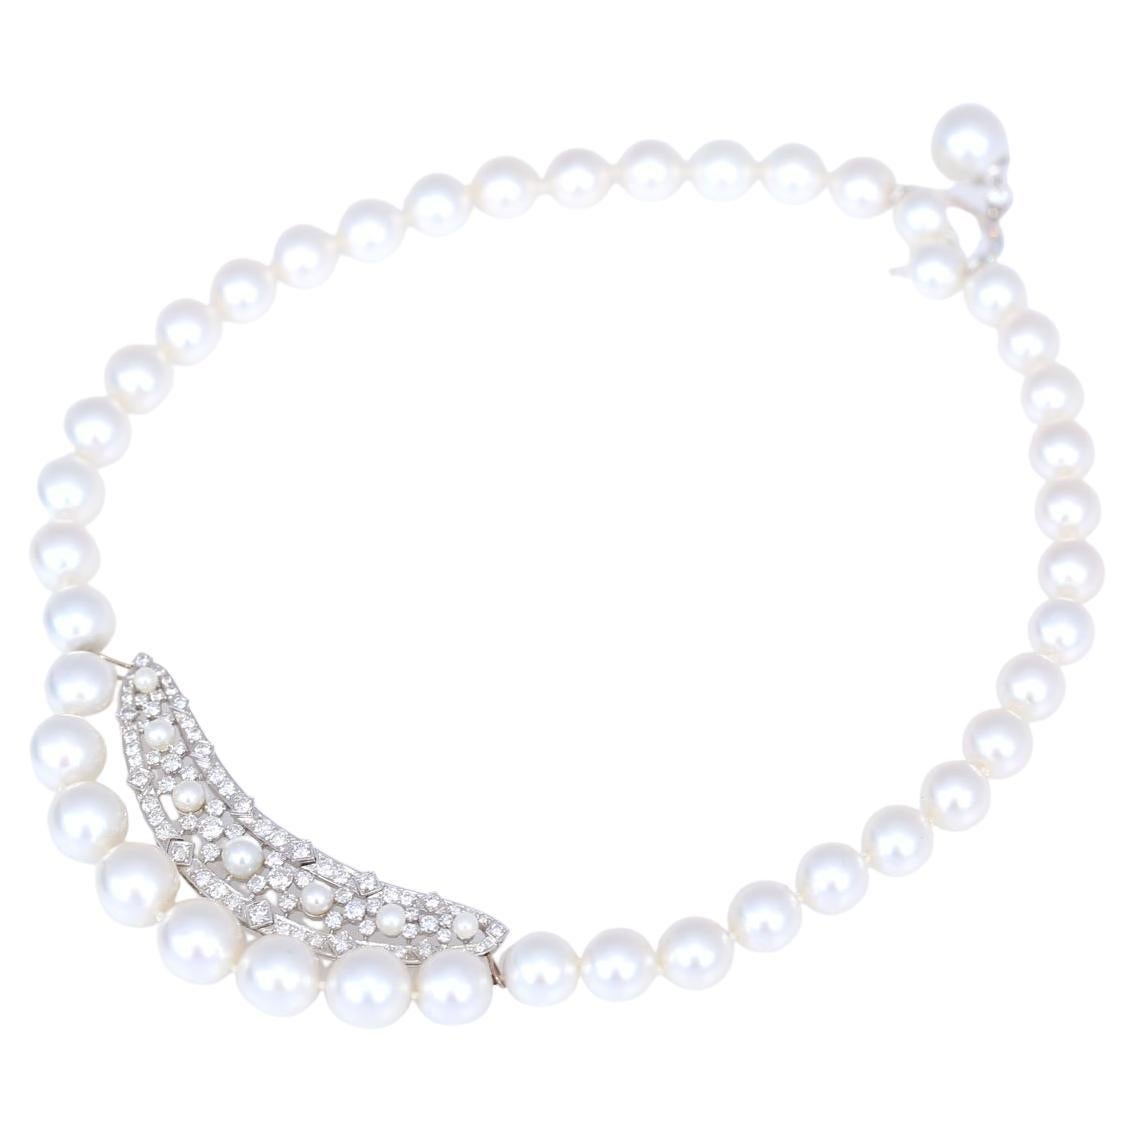 Collier de perles et de diamants AAA 2,5ct, 2020
Collier de perles très inhabituel avec un insert de 2,5 ct de diamants. Une perle fine avec des diamants au dos est un cadenas vraiment rare et ingénieux. Toutes les perles sont de qualité triple A.